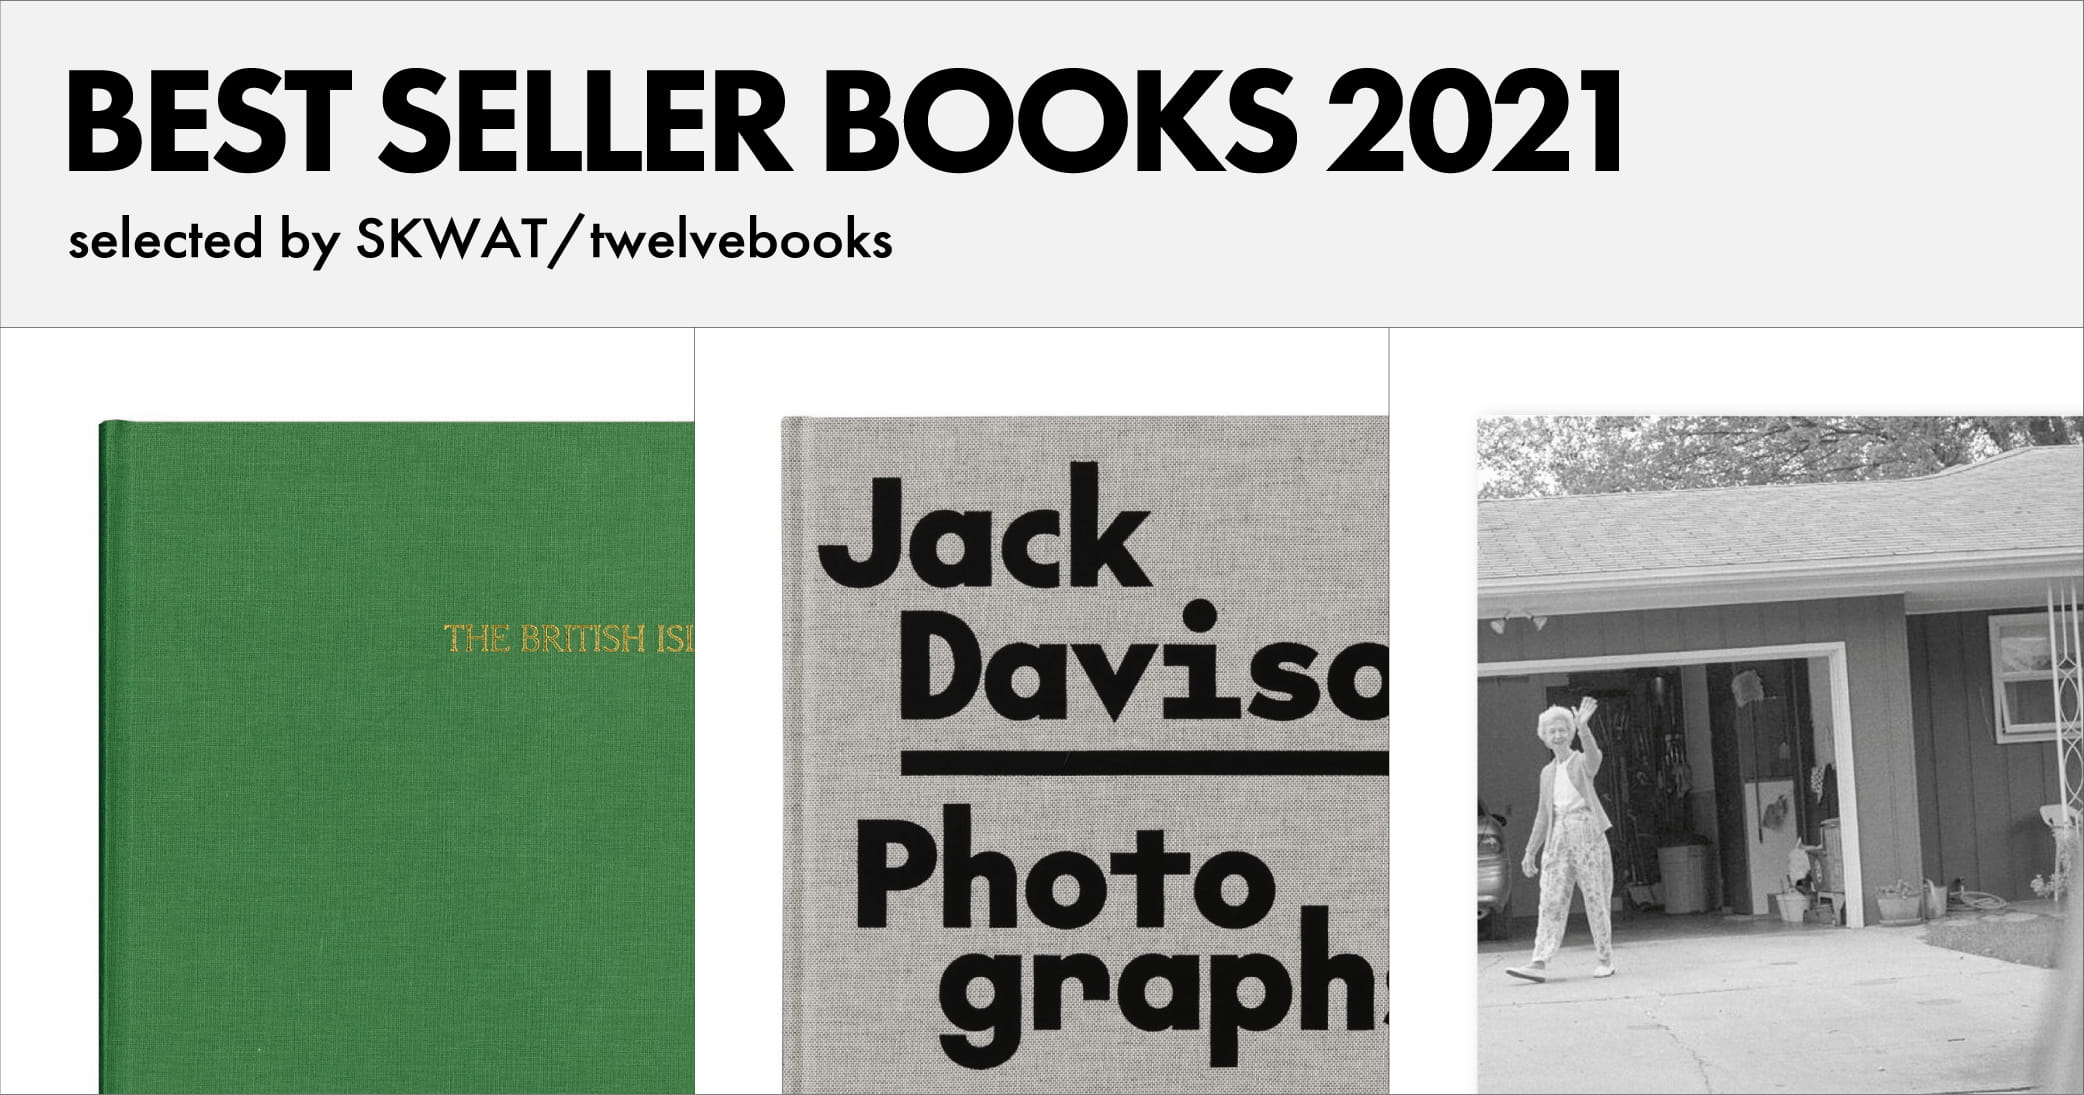 2021年のベストセラー写真集3冊【SKWAT/twelvebooks編】 | 2021年のベストセラー写真集3冊【SKWAT/twelvebooks編】